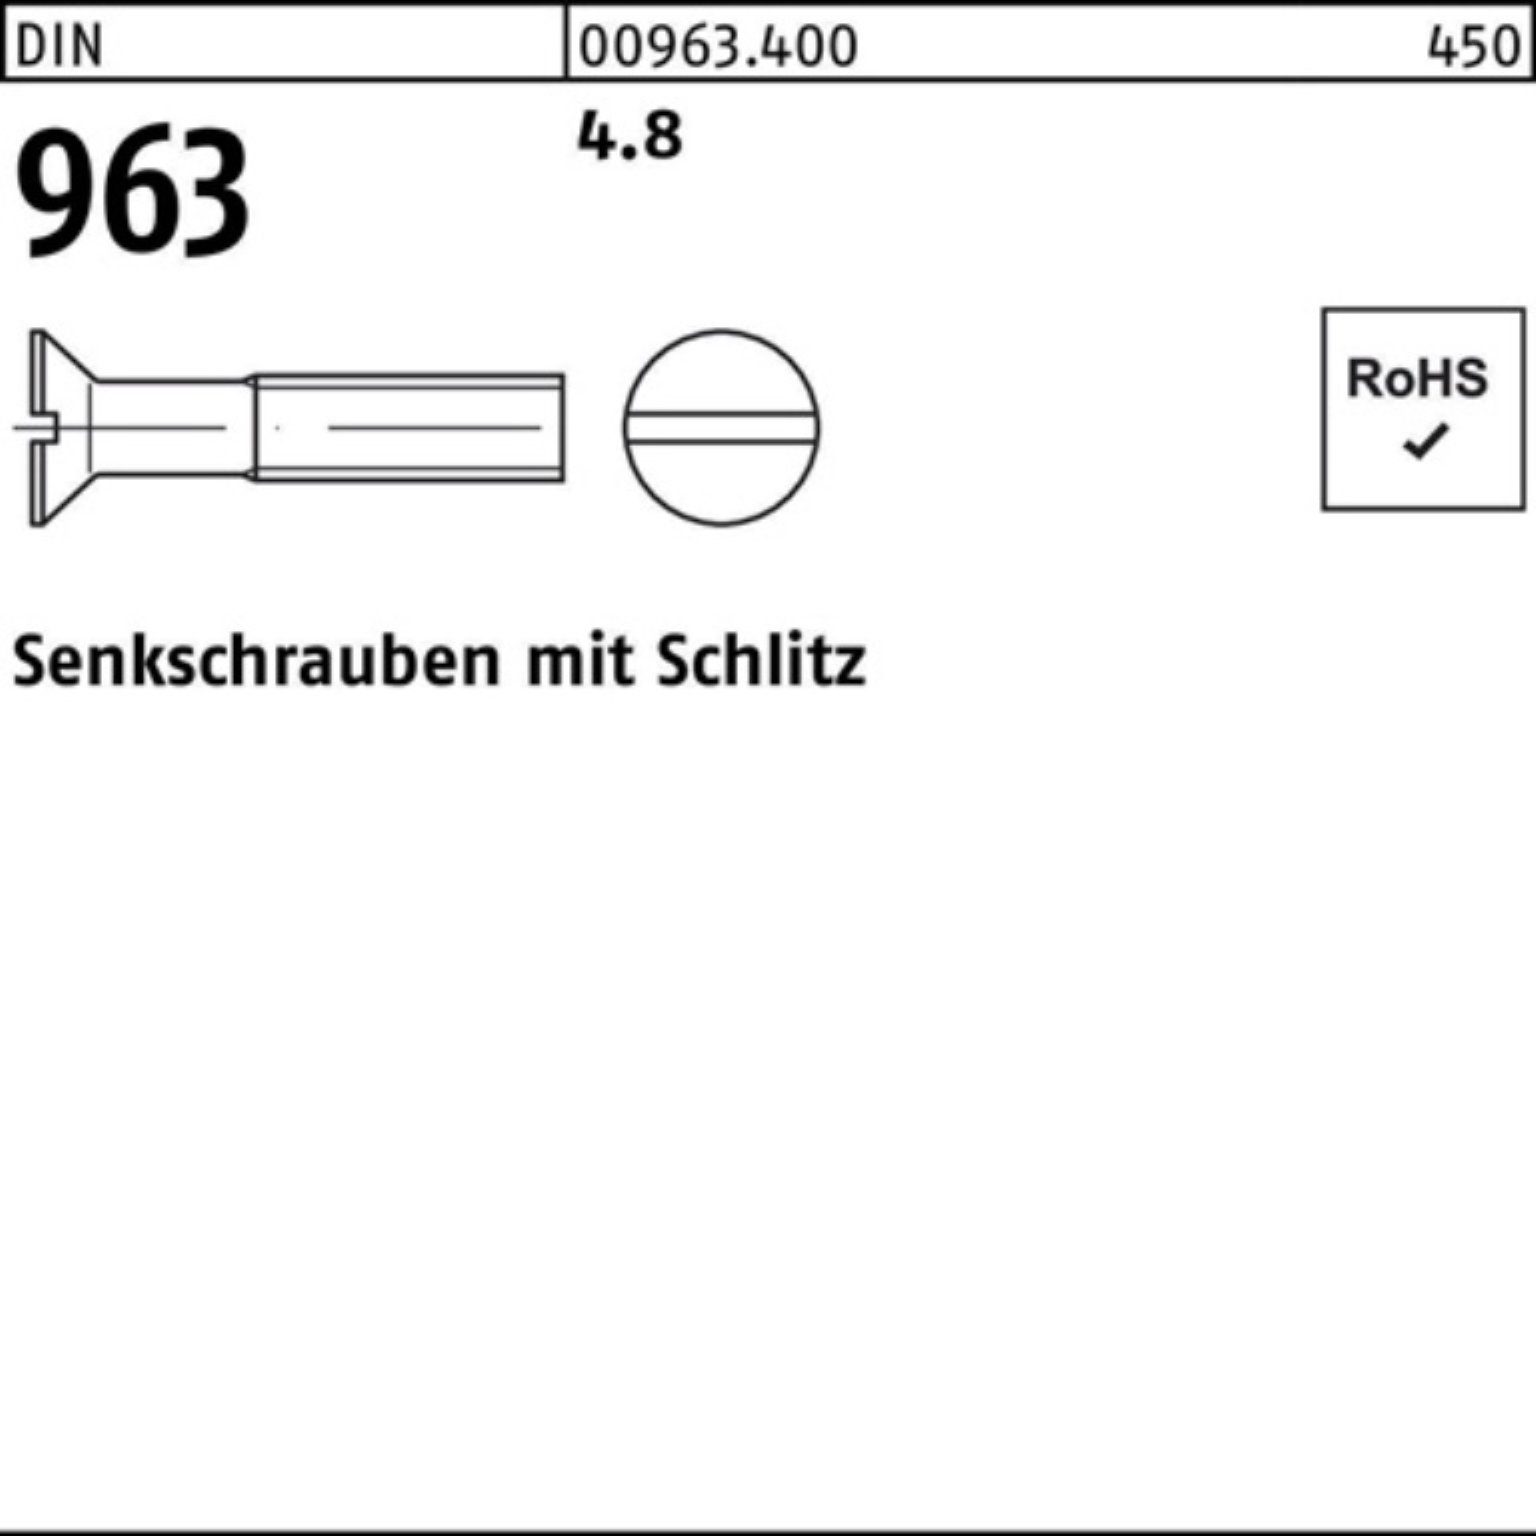 Pack Senkschraube 12 4.8 96 Stück Reyher Senkschraube Schlitz DIN M5x 963 DIN 1000 1000er